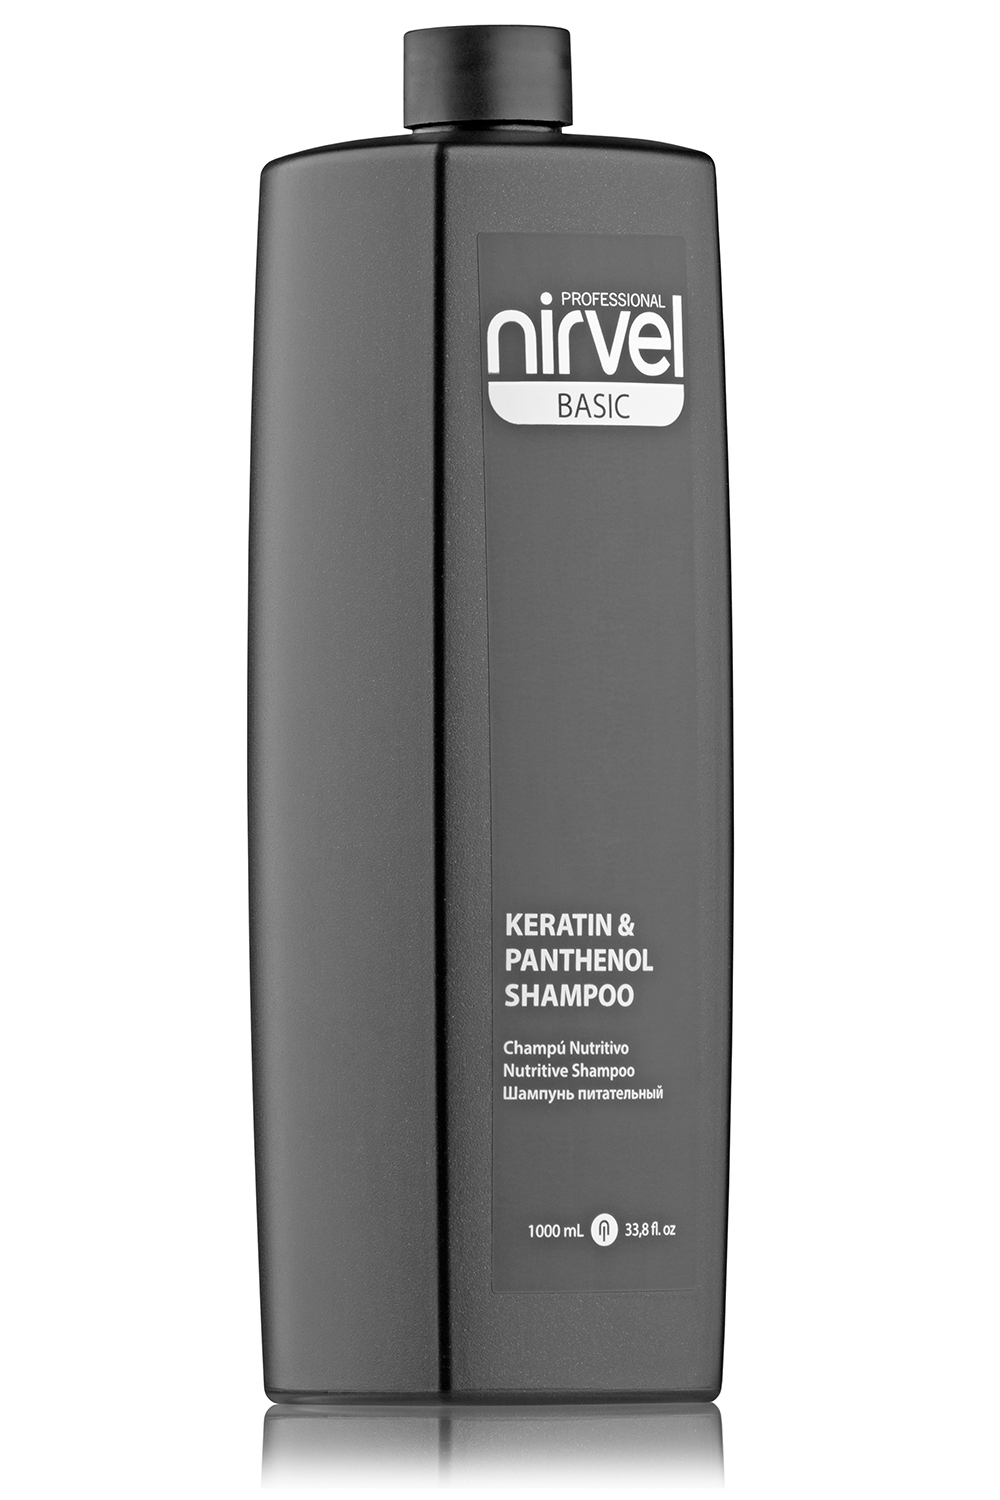 NIRVEL PROFESSIONAL Шампунь питательный с кератином и пантенолом для сухих, ломких и поврежденных волос / KERATIN & PANTHENOL SHAMPOO 1000 мл